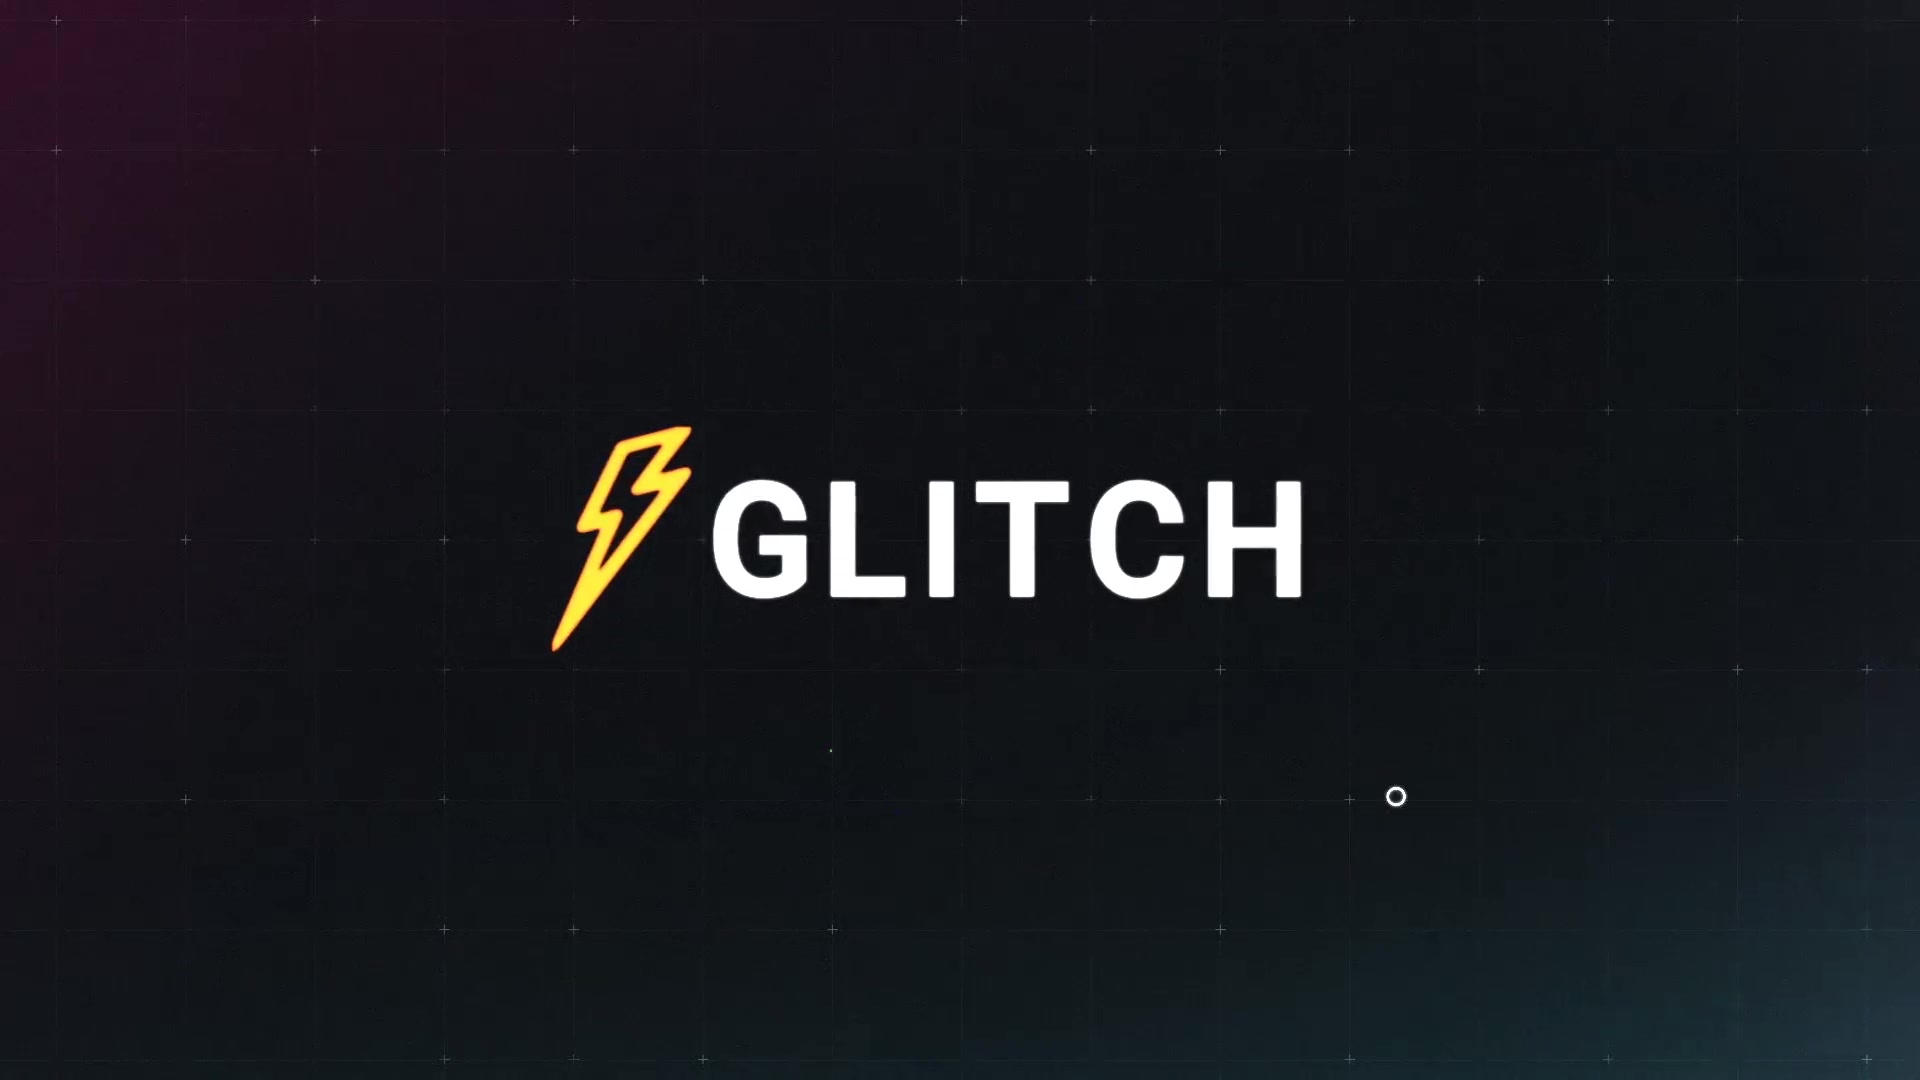 Glitch Logo Premiere Pro MOGRT Videohive 25745727 Premiere Pro Image 3